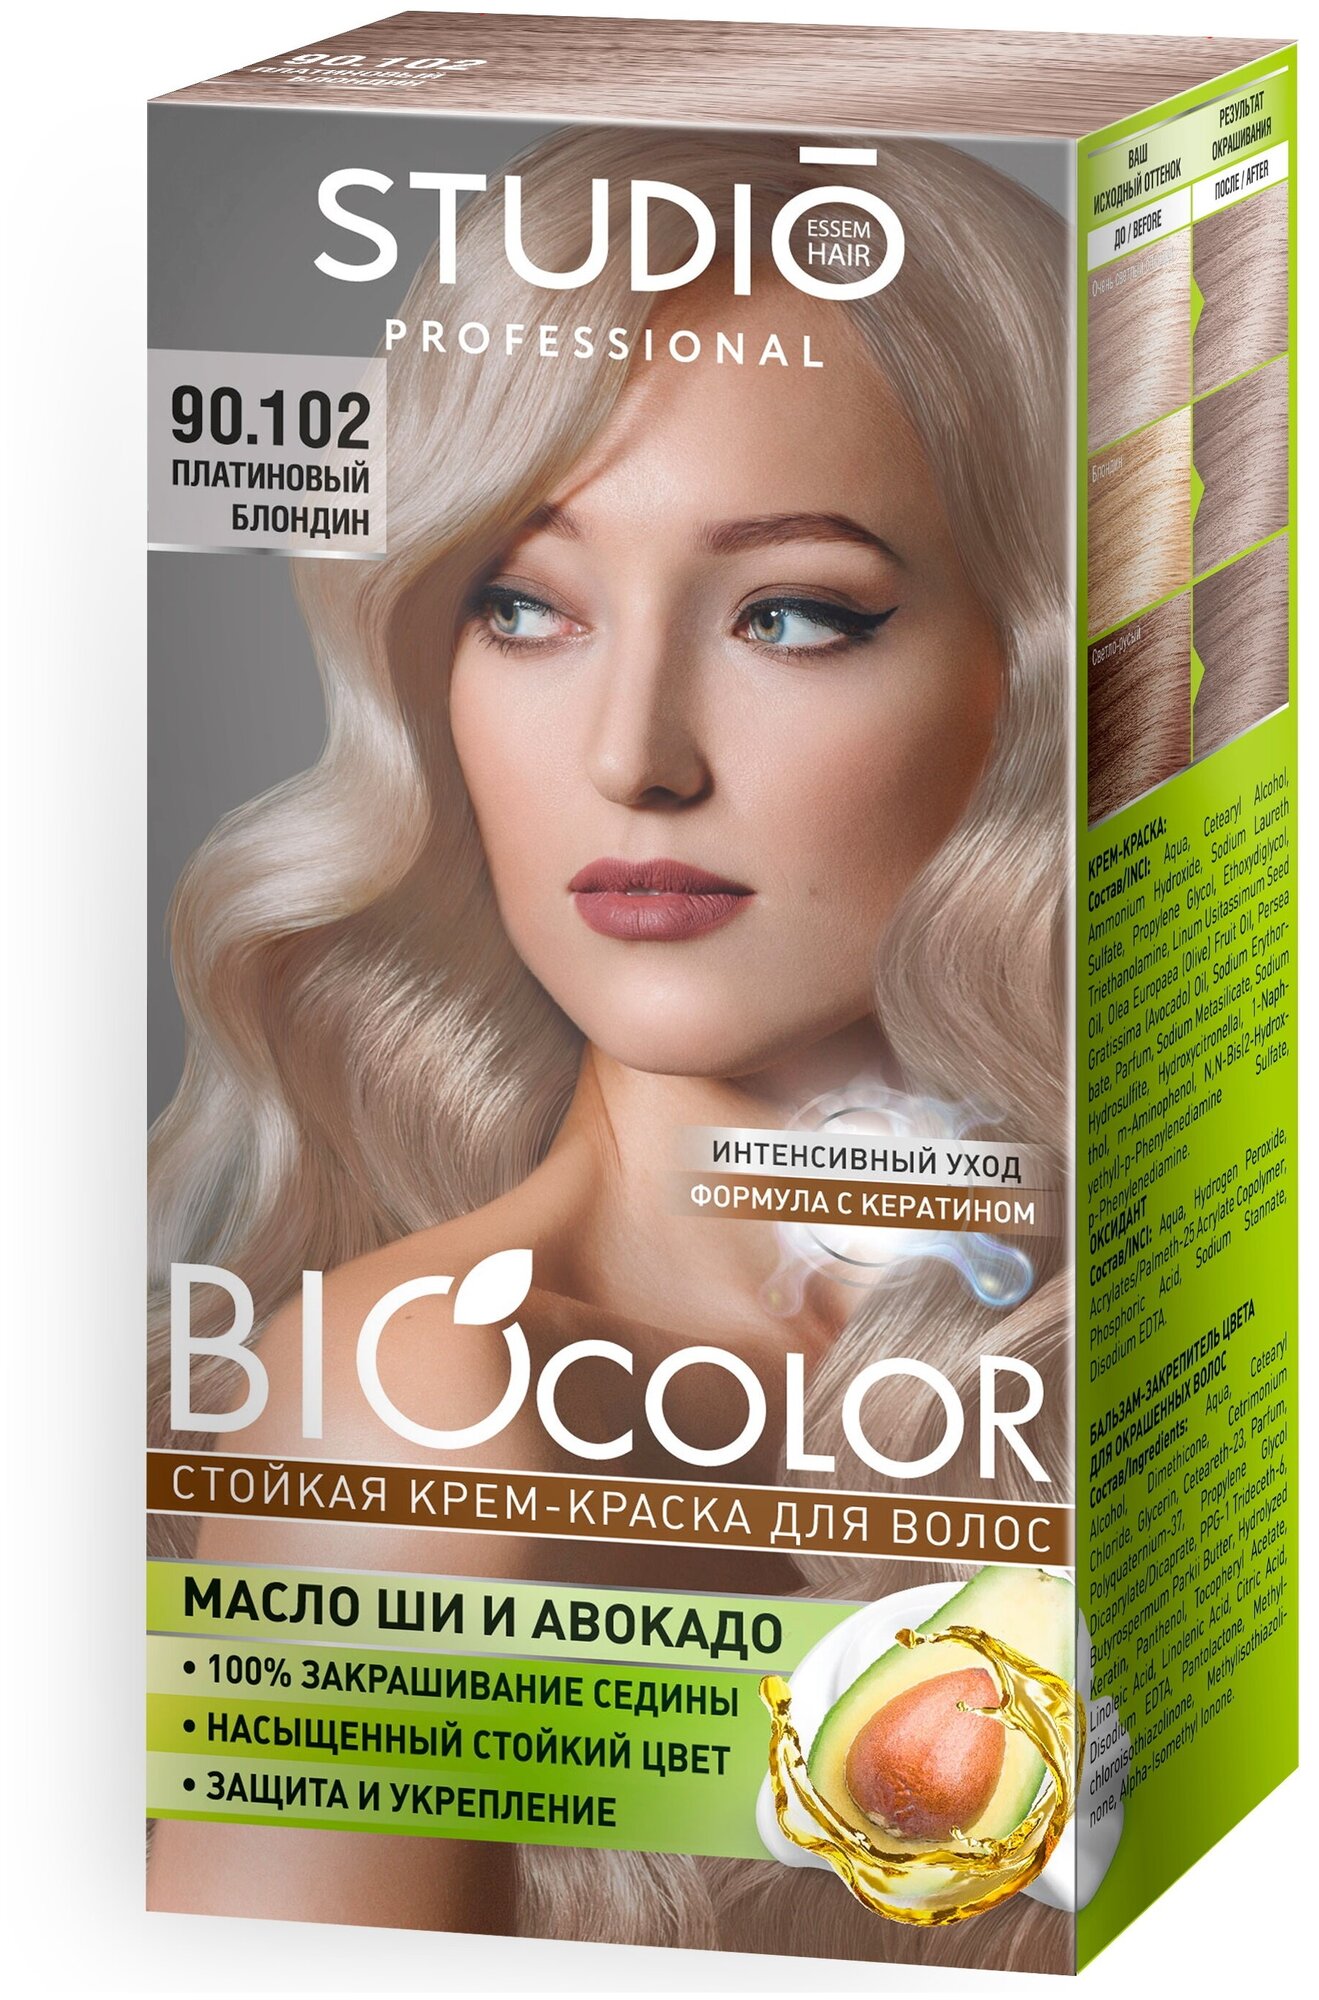 Комплект BIOCOLOR для окрашивания волос STUDIO PROFESSIONAL 90.102 платиновый блондин 2*50+15 мл